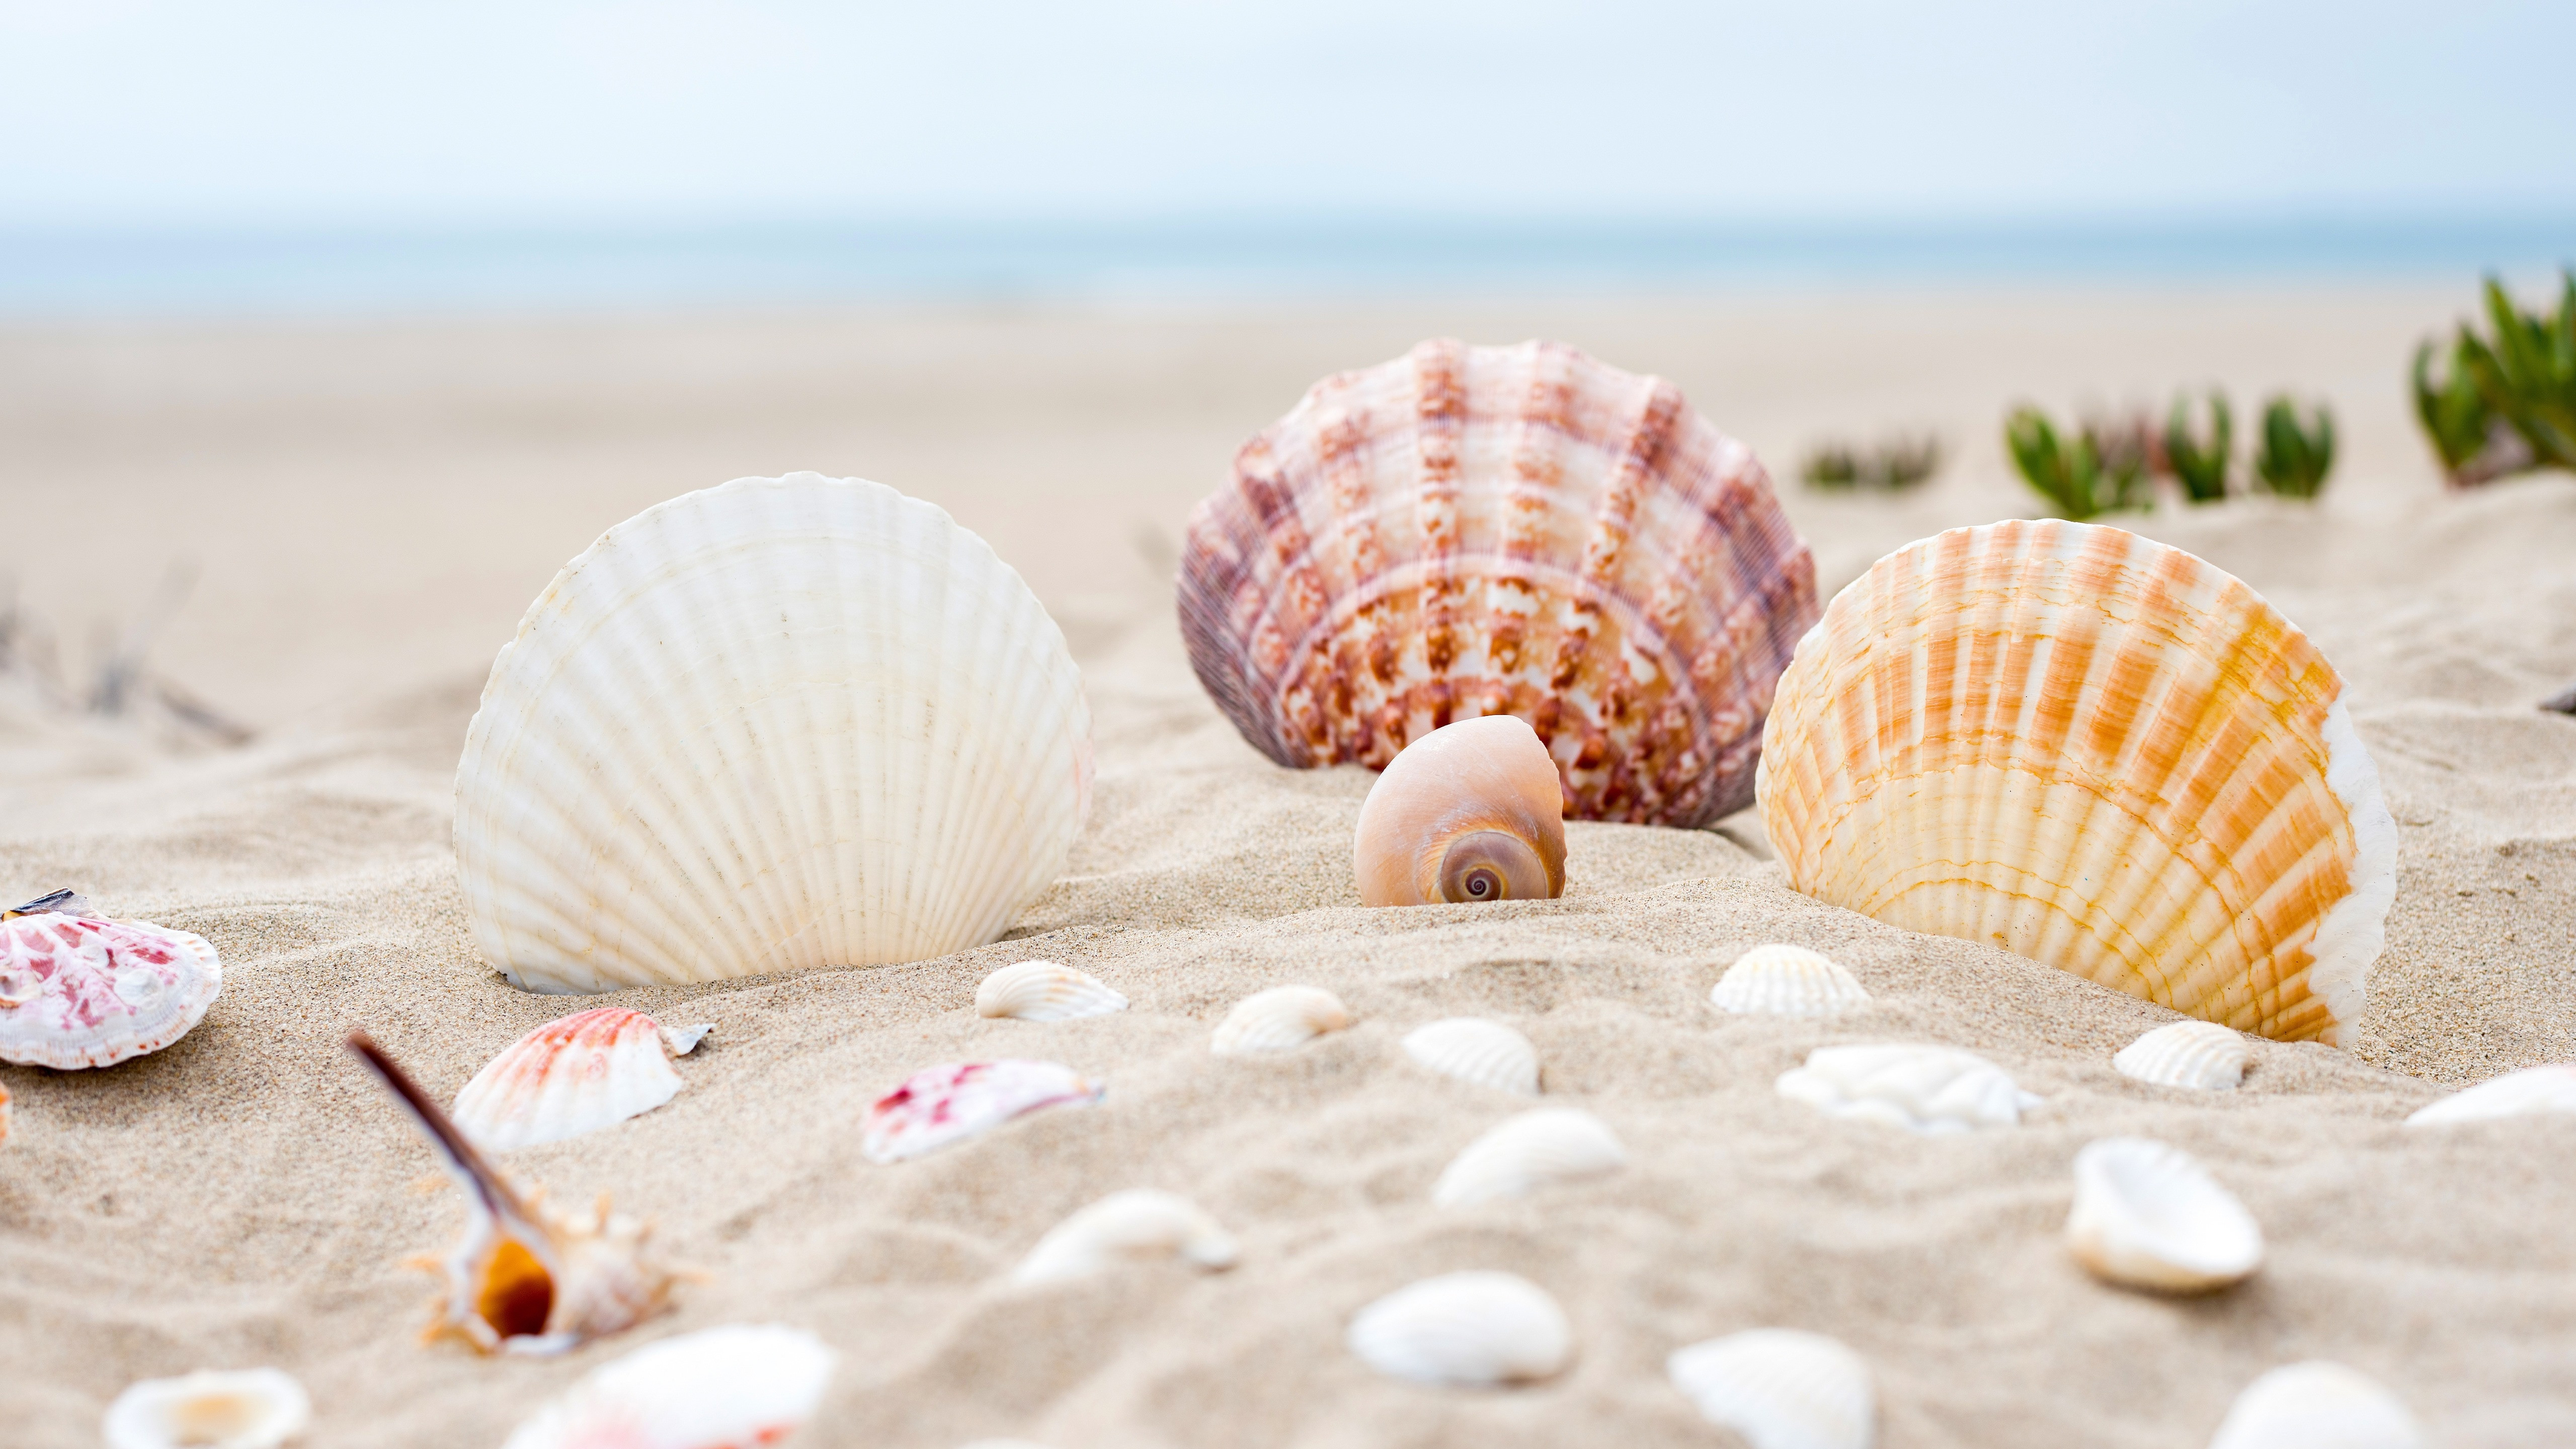 Shells on the ocean beach wallpaper 5120x2880